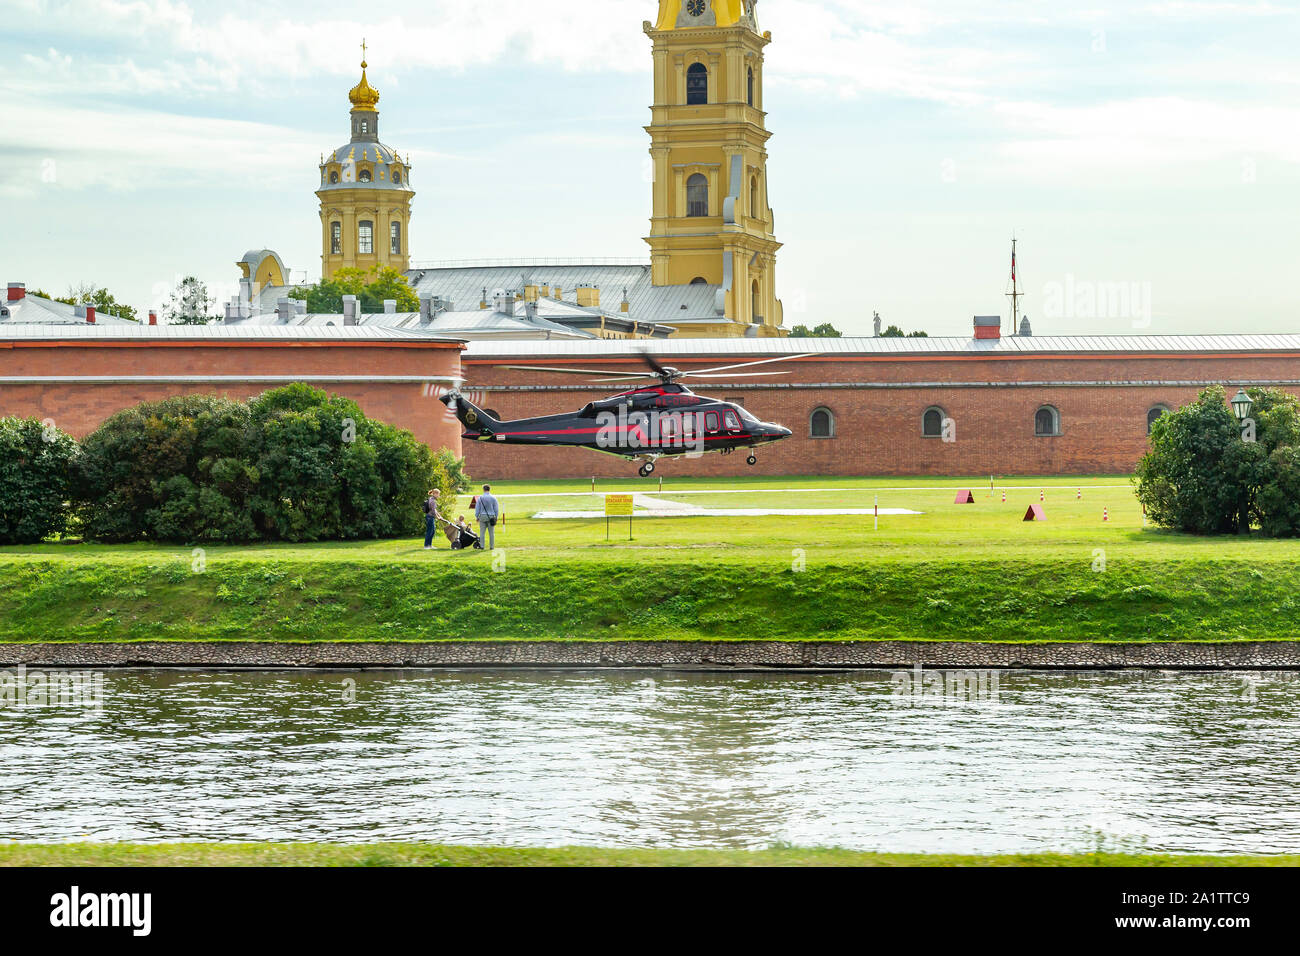 Ein Hubschrauber landen in St. Peter und Paul Festung genommen fromkronverkskaya Naberezhnaya, St. Petersburg, Russland. Stockfoto